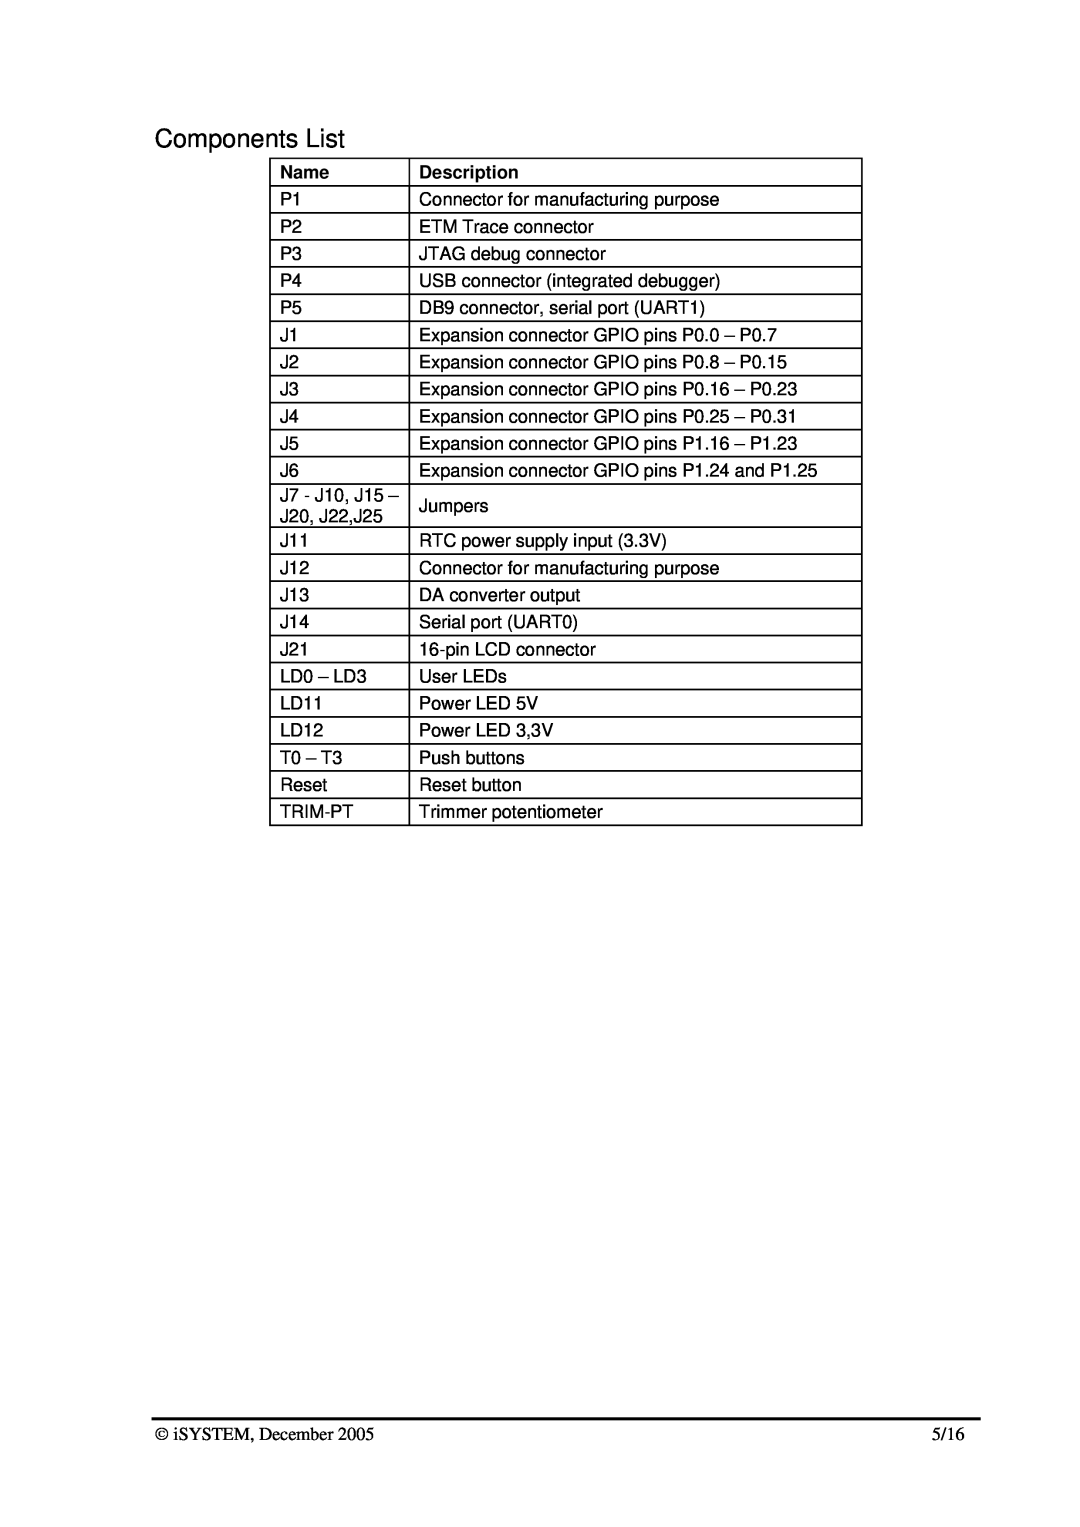 Philips LPC2138 dimensions Components List, Name, Description 